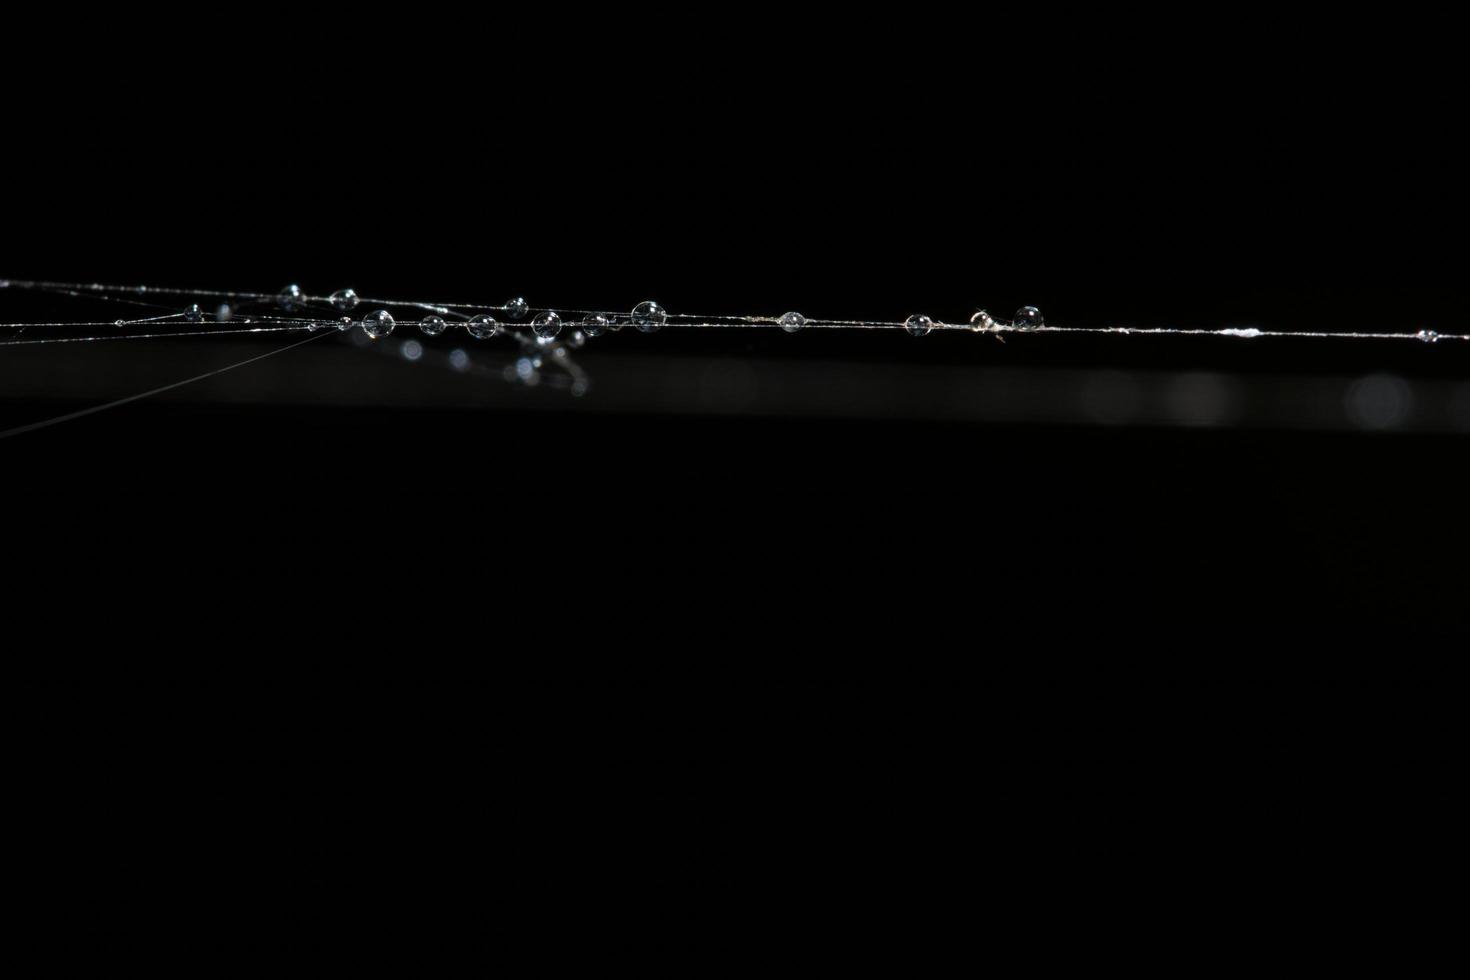 Wassertropfen auf das Spinnennetz, Nahaufnahme foto